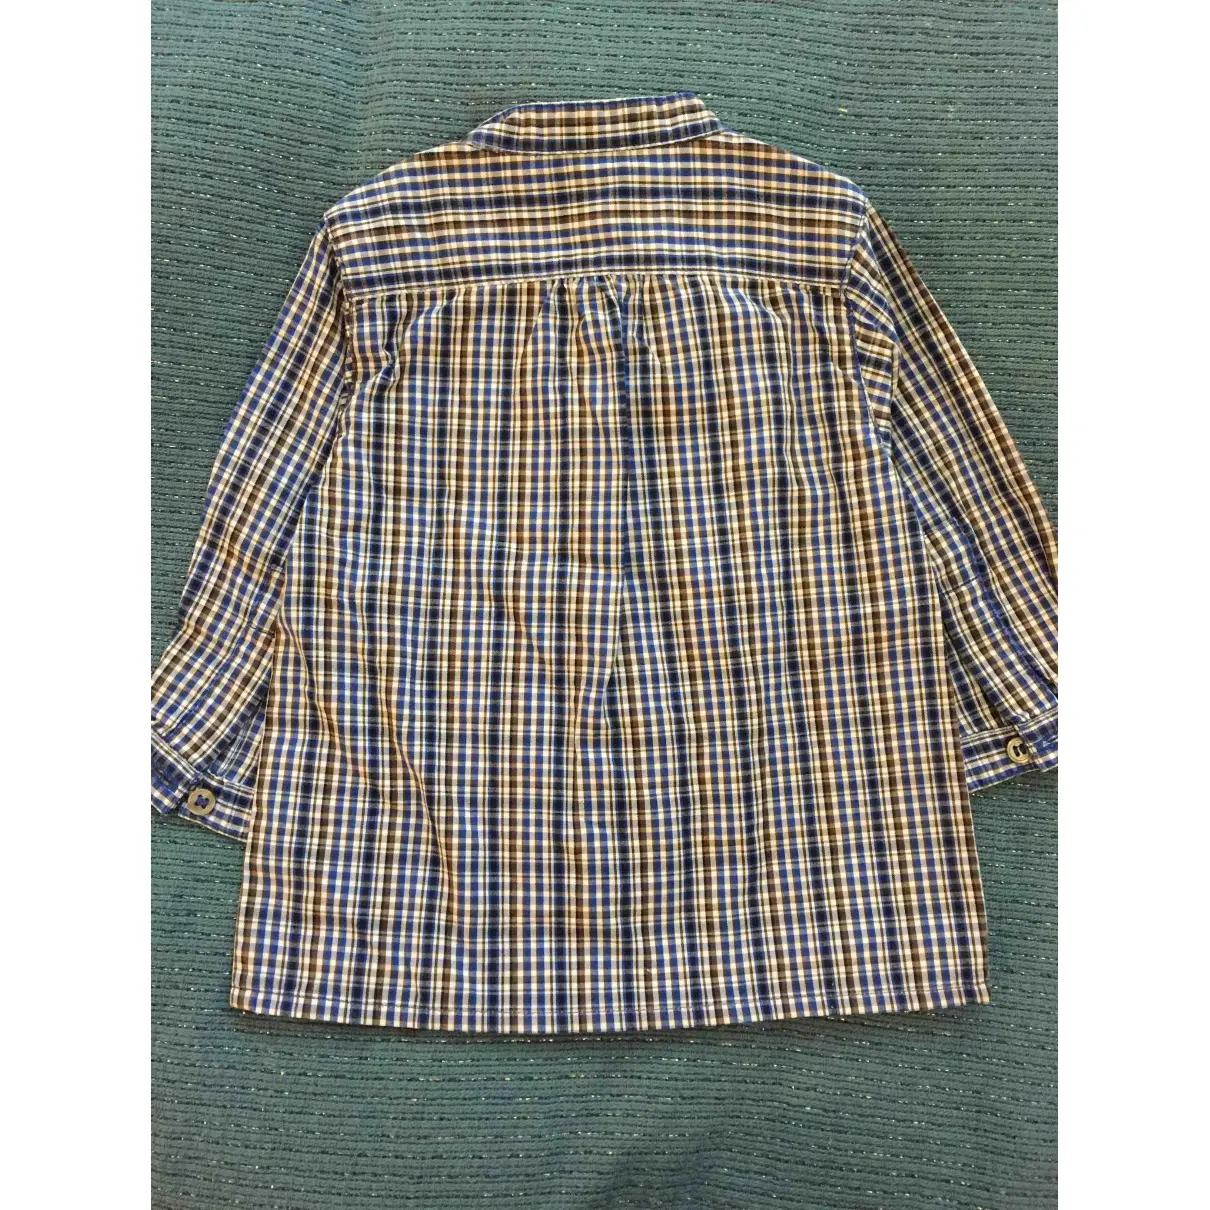 Petit Bateau Shirt for sale